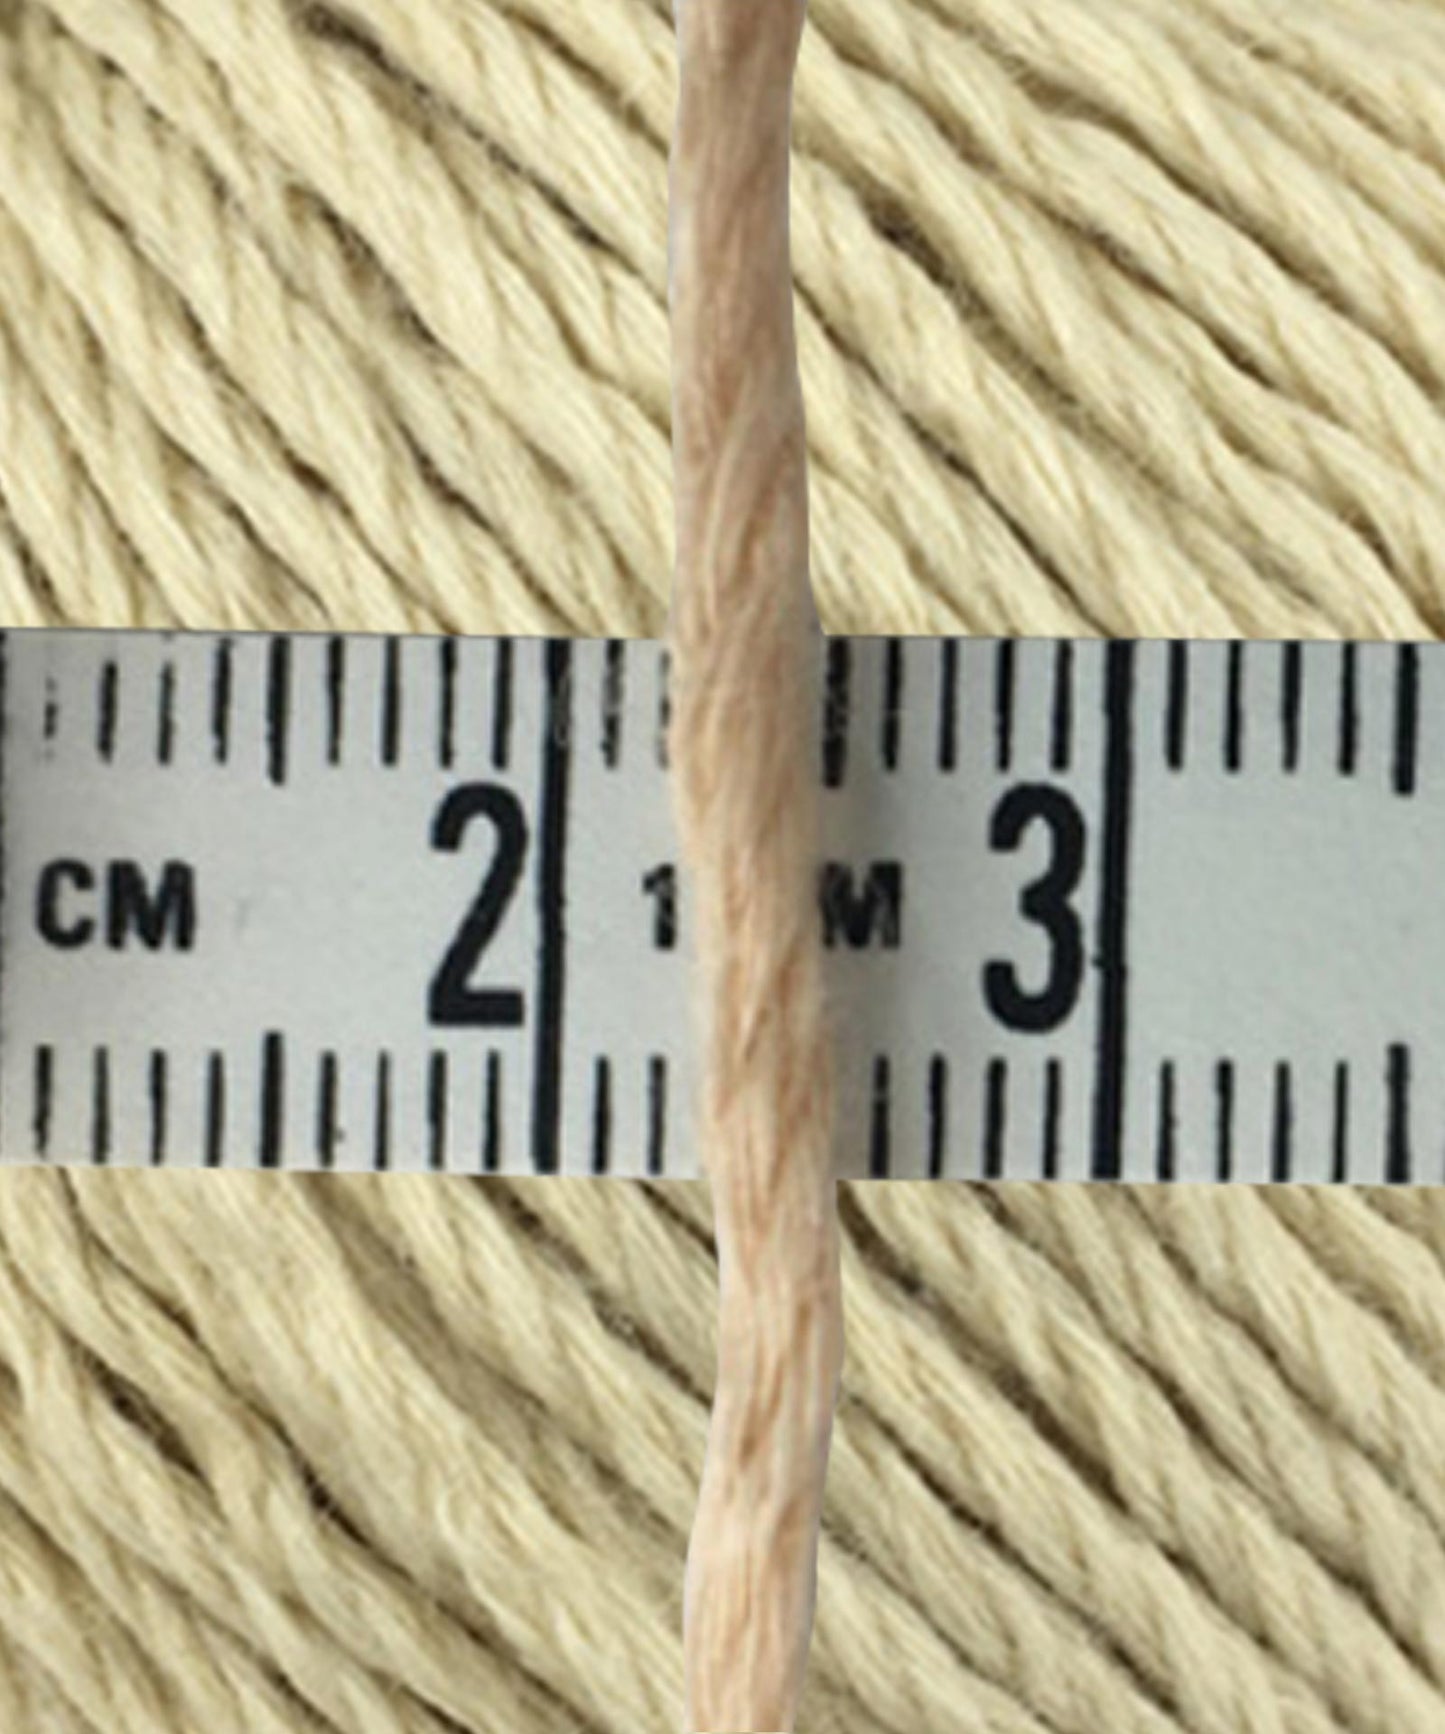 yarn thickness 2~3mm